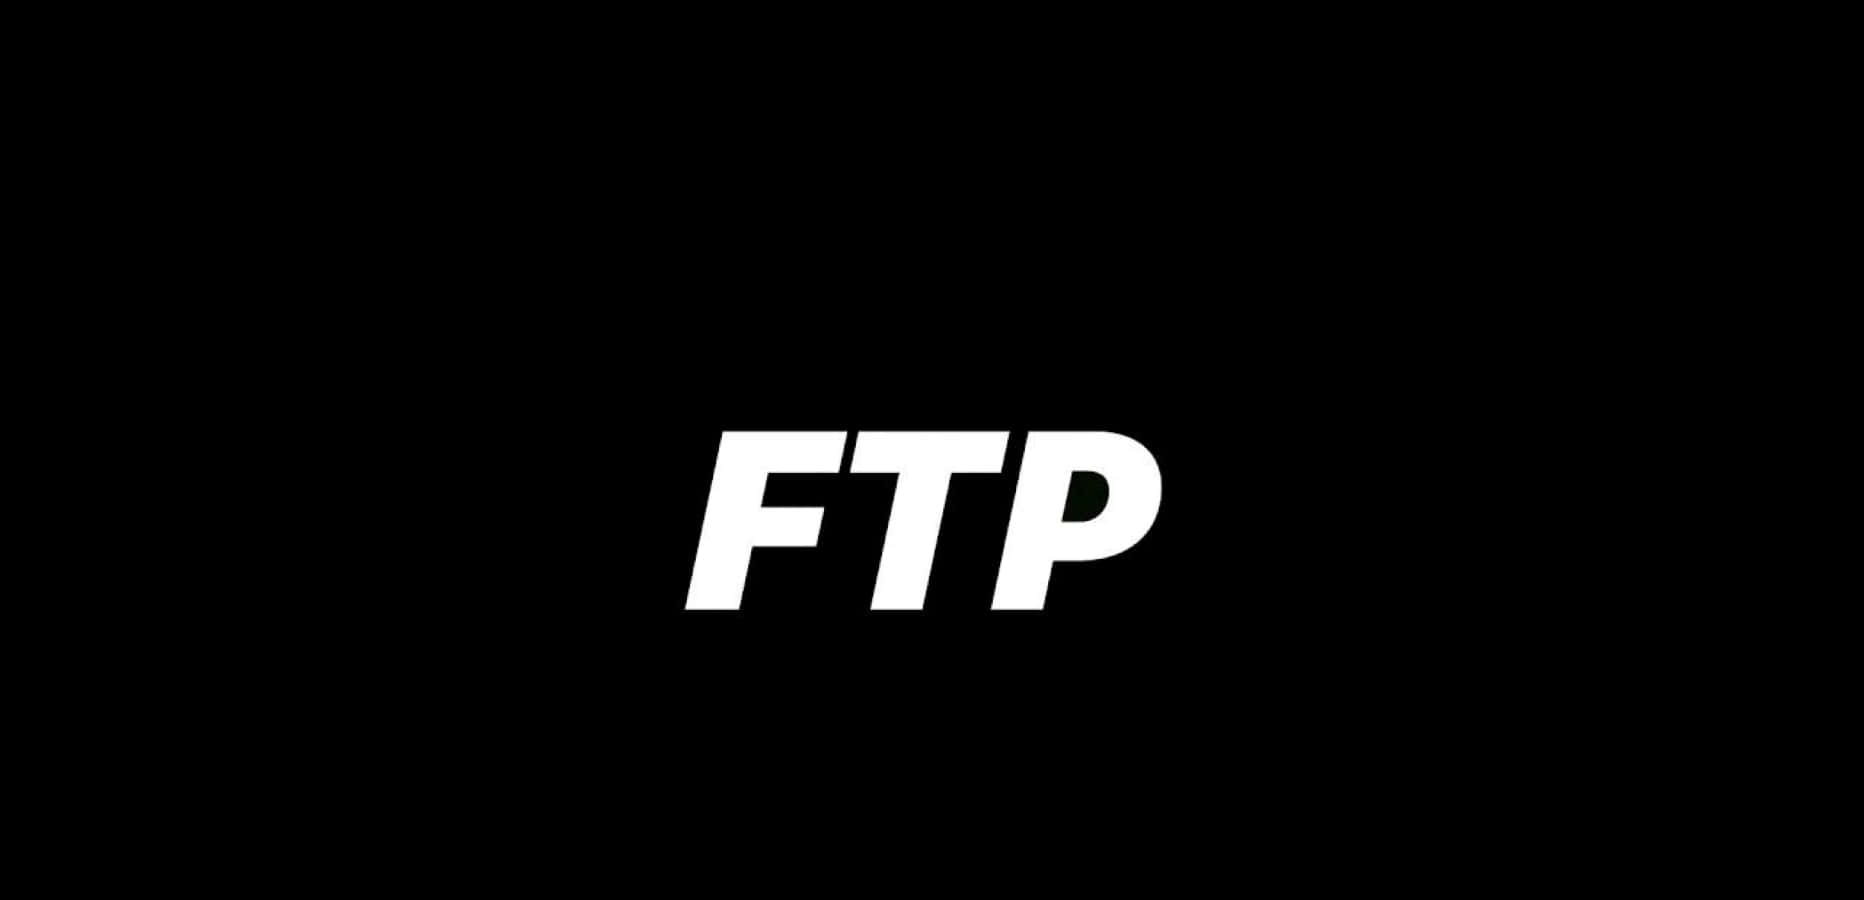 Conexiónal Servidor Ftp En Una Pantalla De Ordenador. Fondo de pantalla